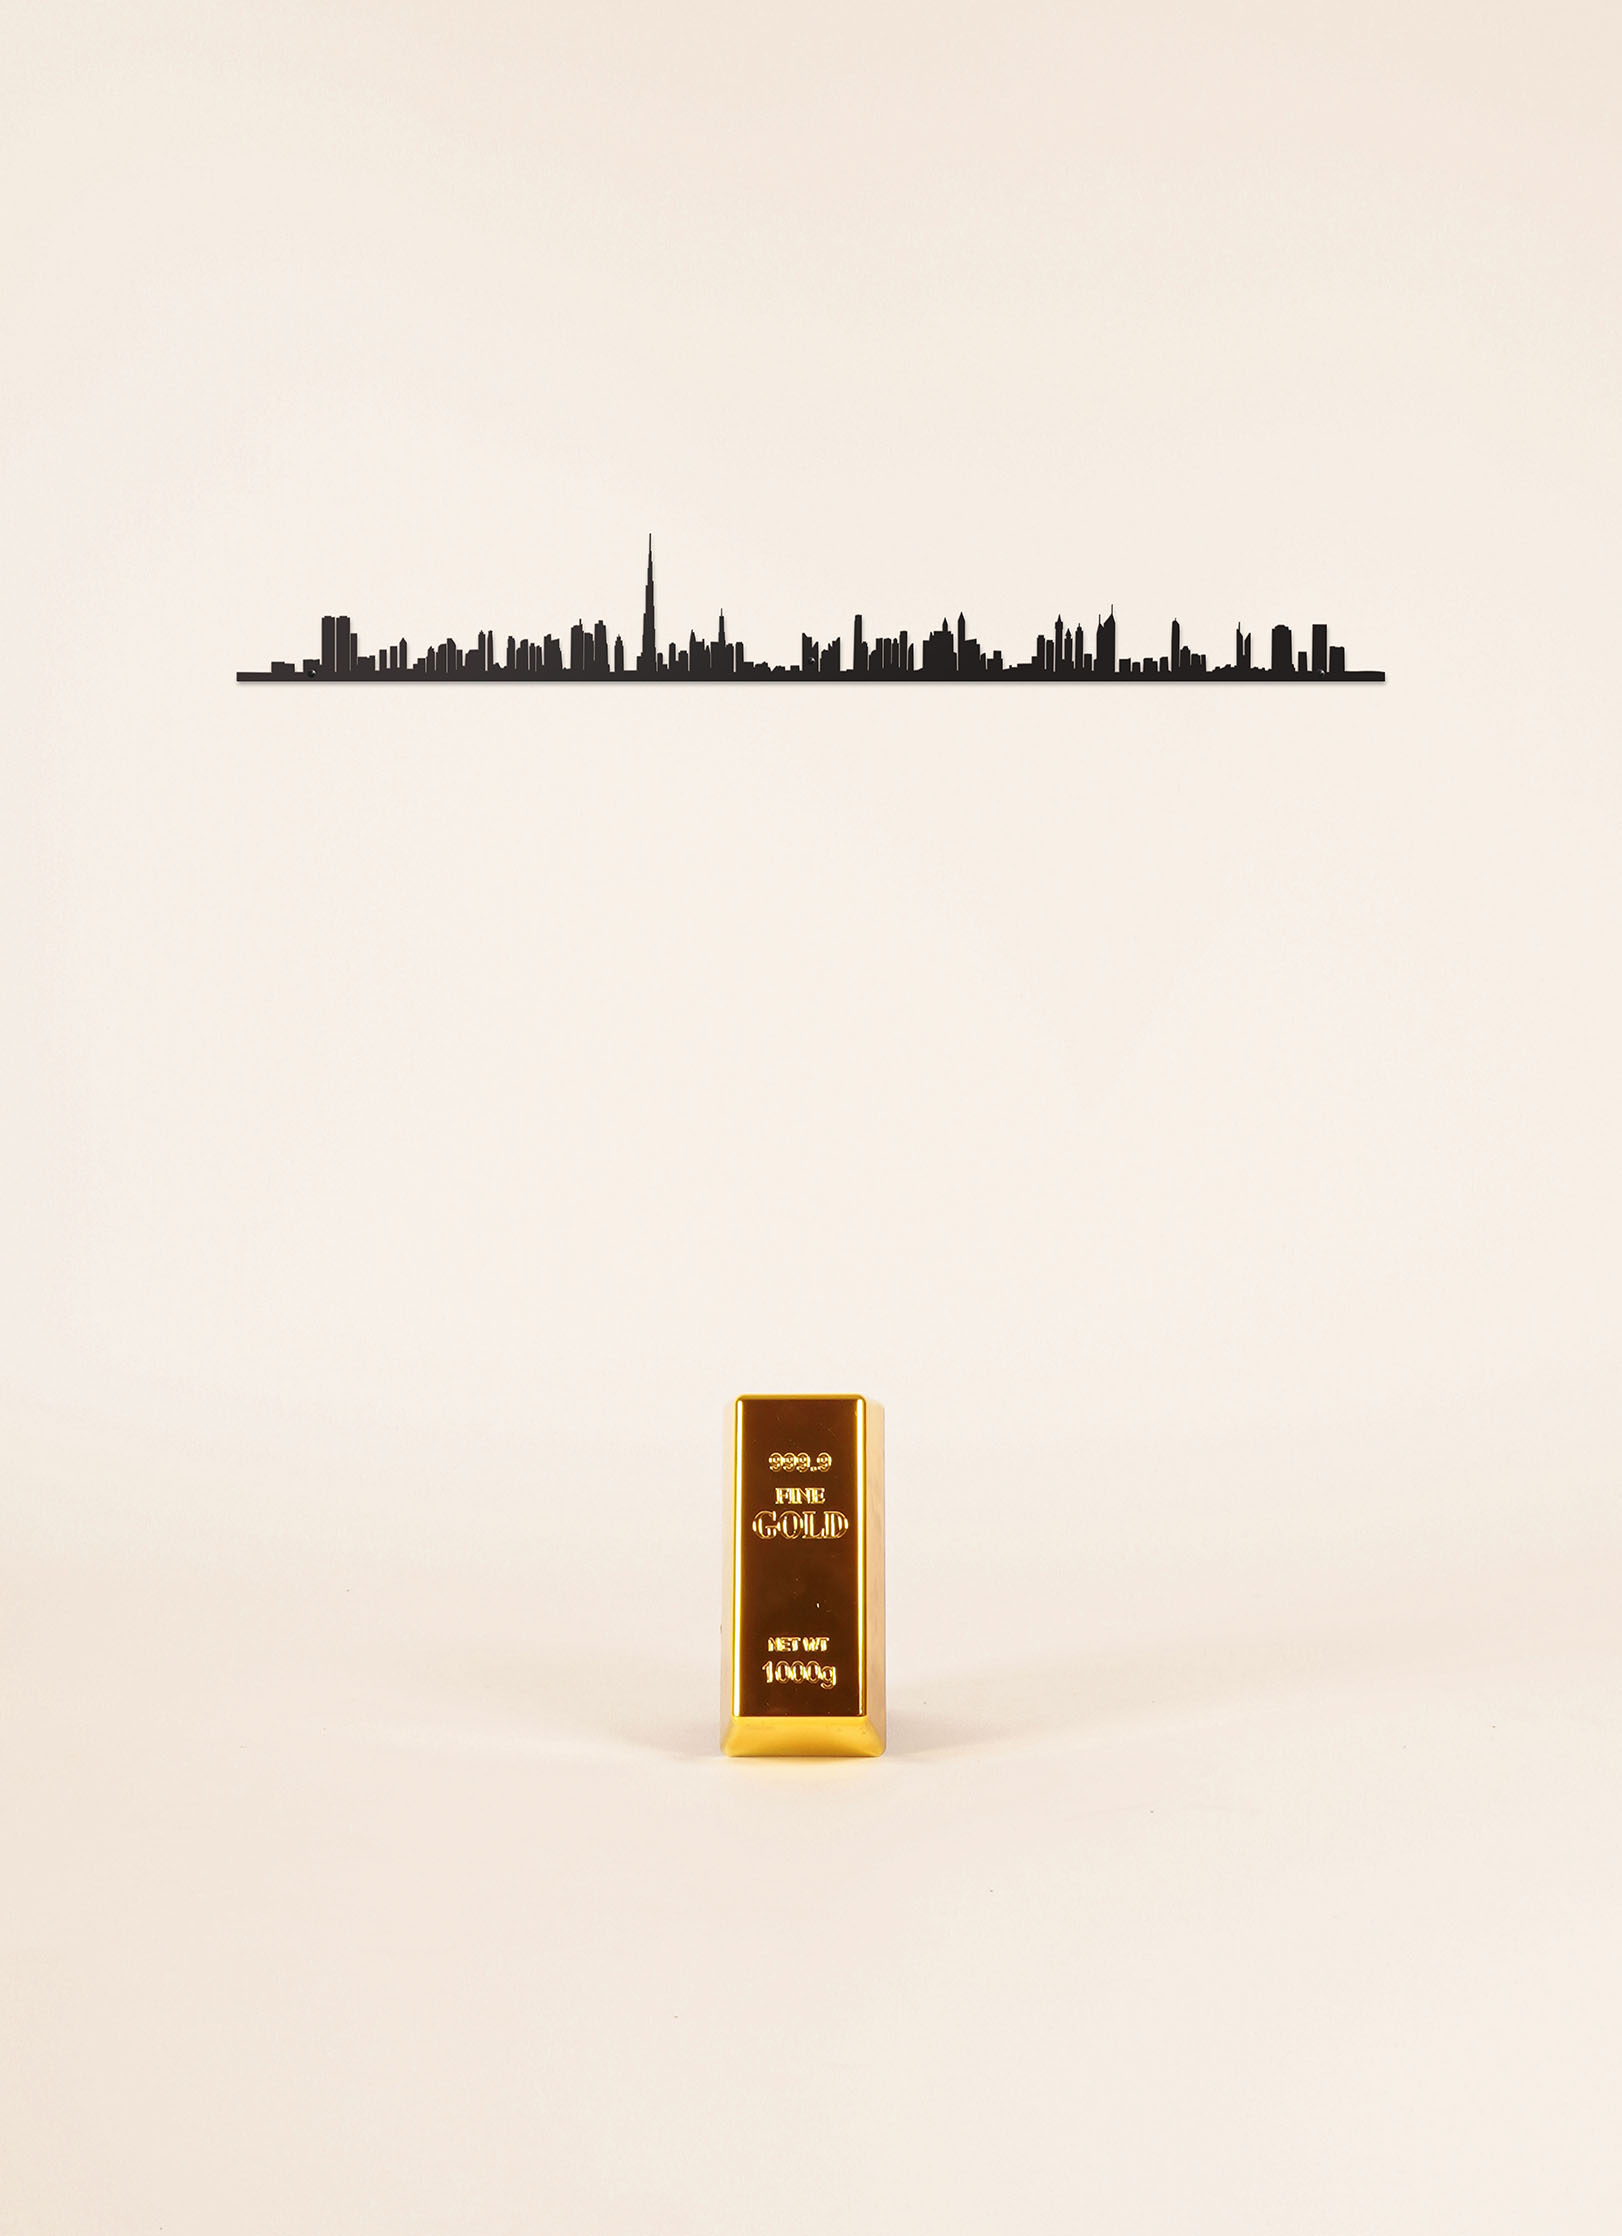 Cliché skyline de Dubai